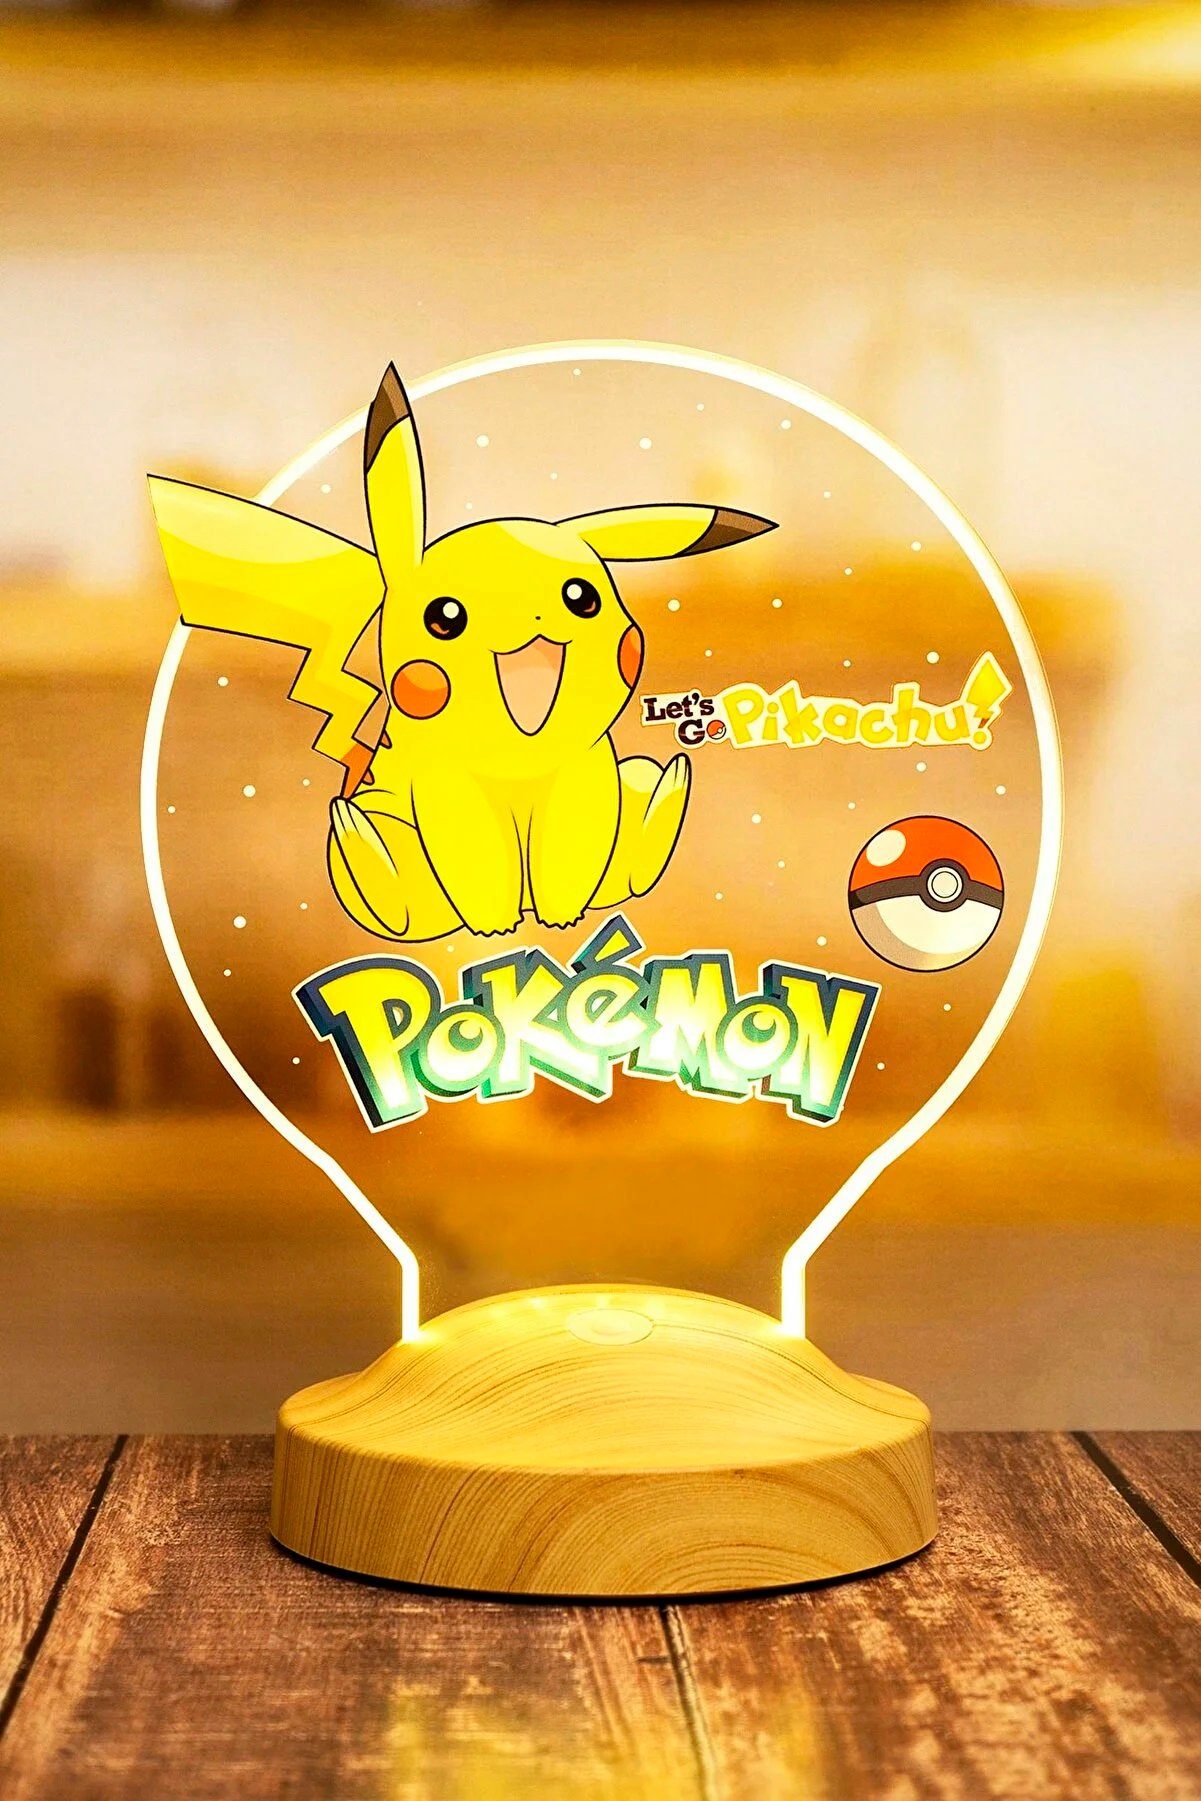 Geschenkelampe LED Nachttischlampe Pikachu für Pokemon Fans 3D Nachtlicht Kinderzimmer Dekor, Leuchte 7 Farben fest integriert, Geschenk für Jungen, Mädchen, Weihnachtsgeschenk